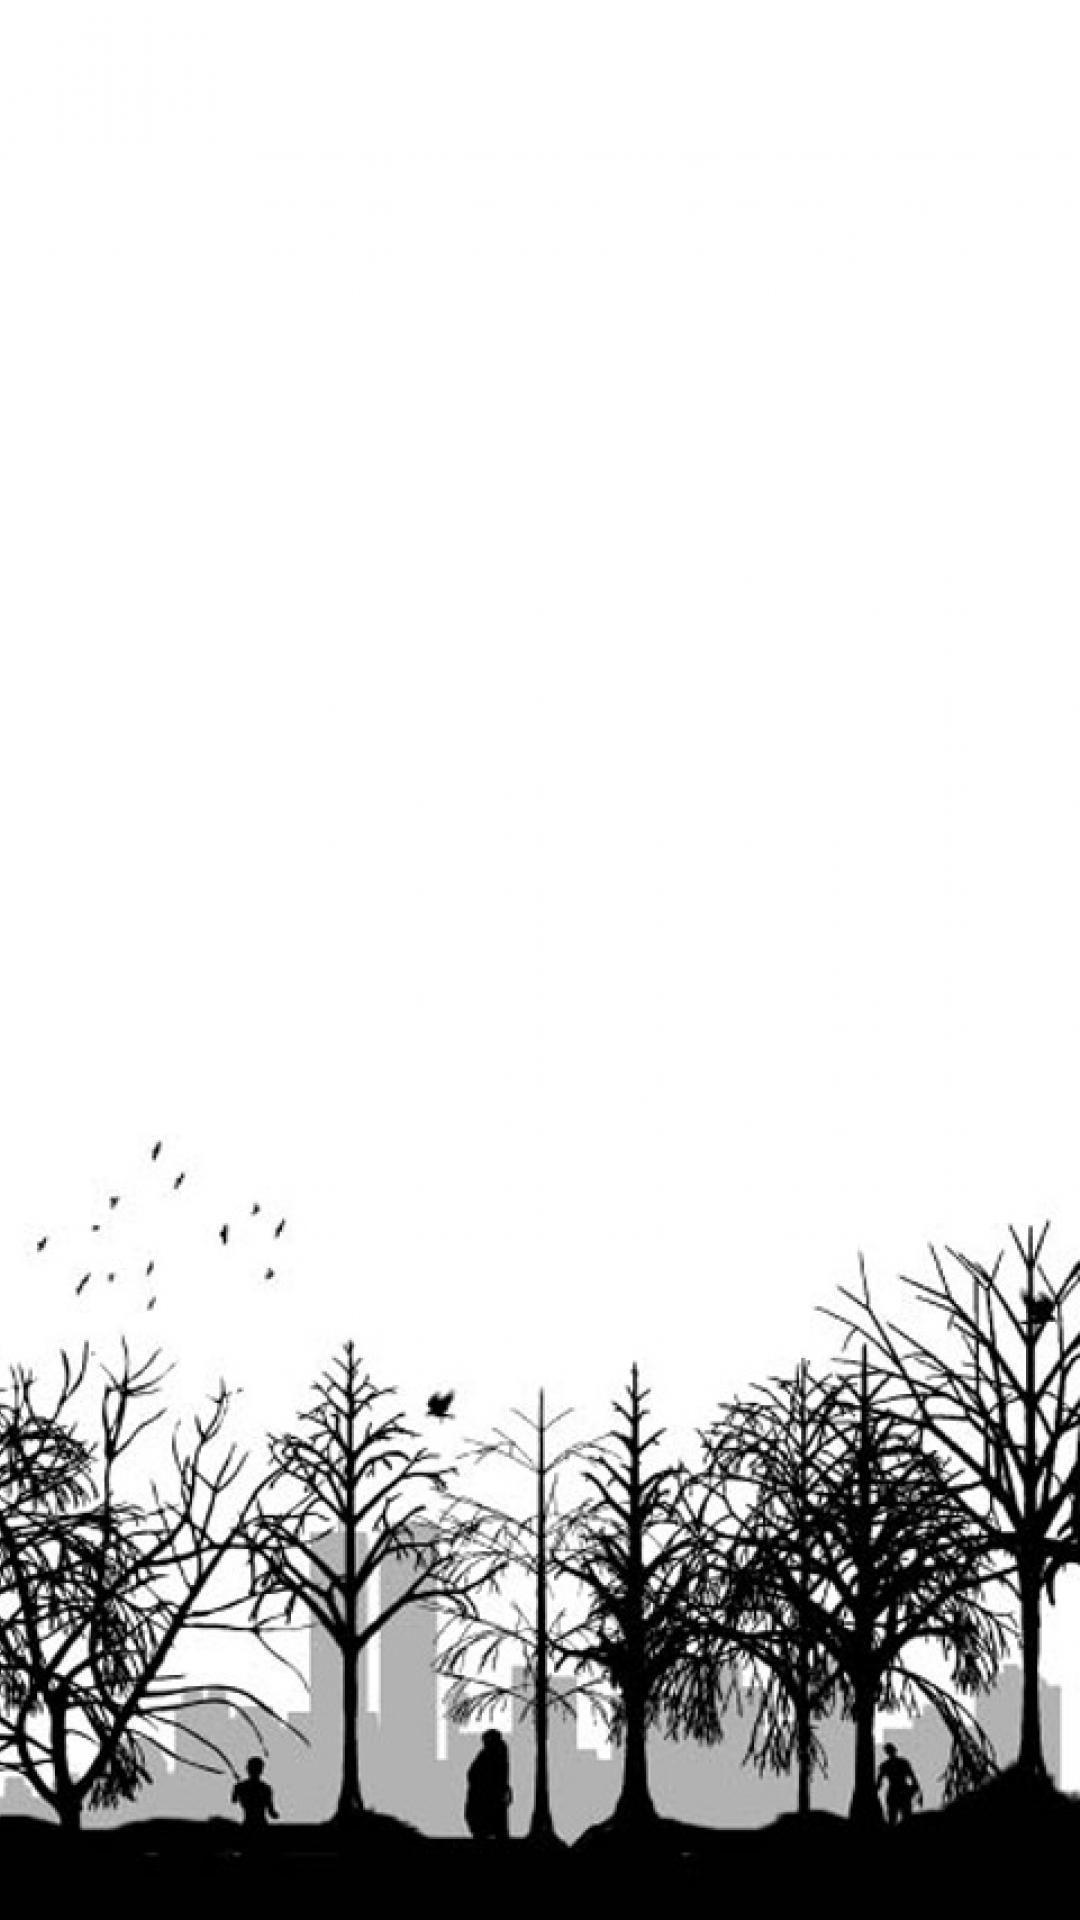 Anime Black and White iPhone Wallpapers - Top Những Hình Ảnh Đẹp